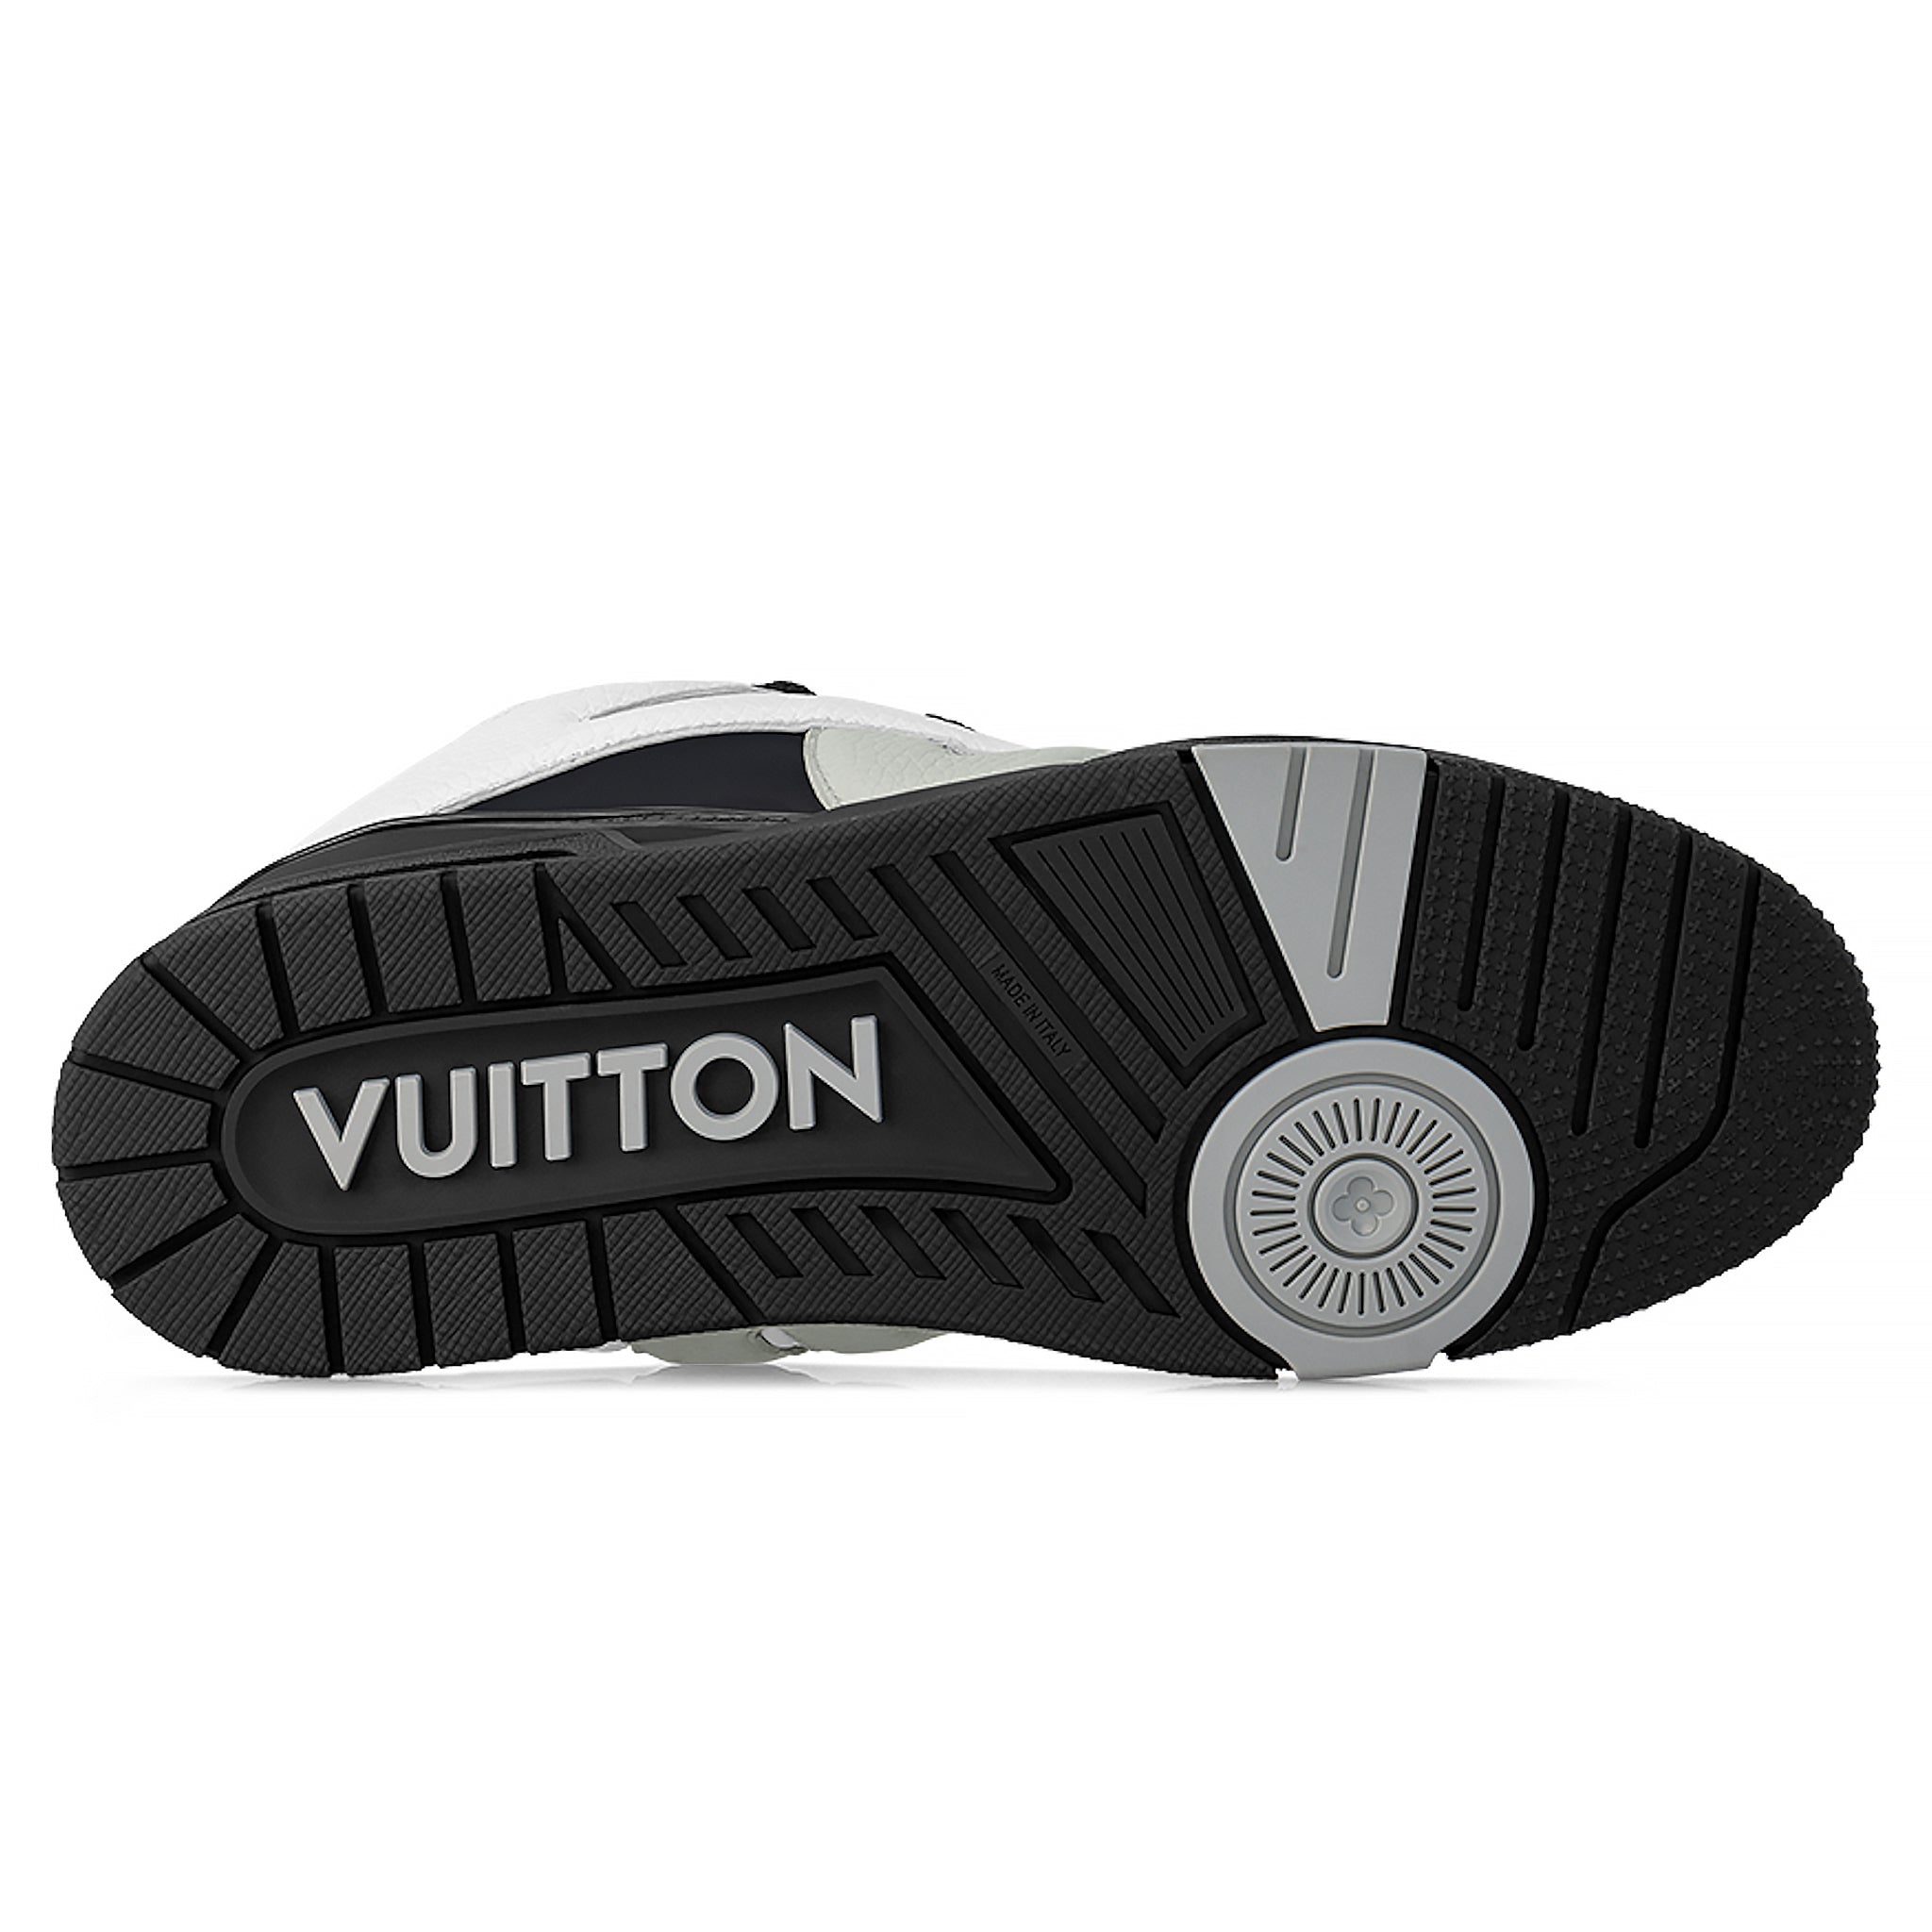 Louis Vuitton Skate Trainer Beige - UK 6.5